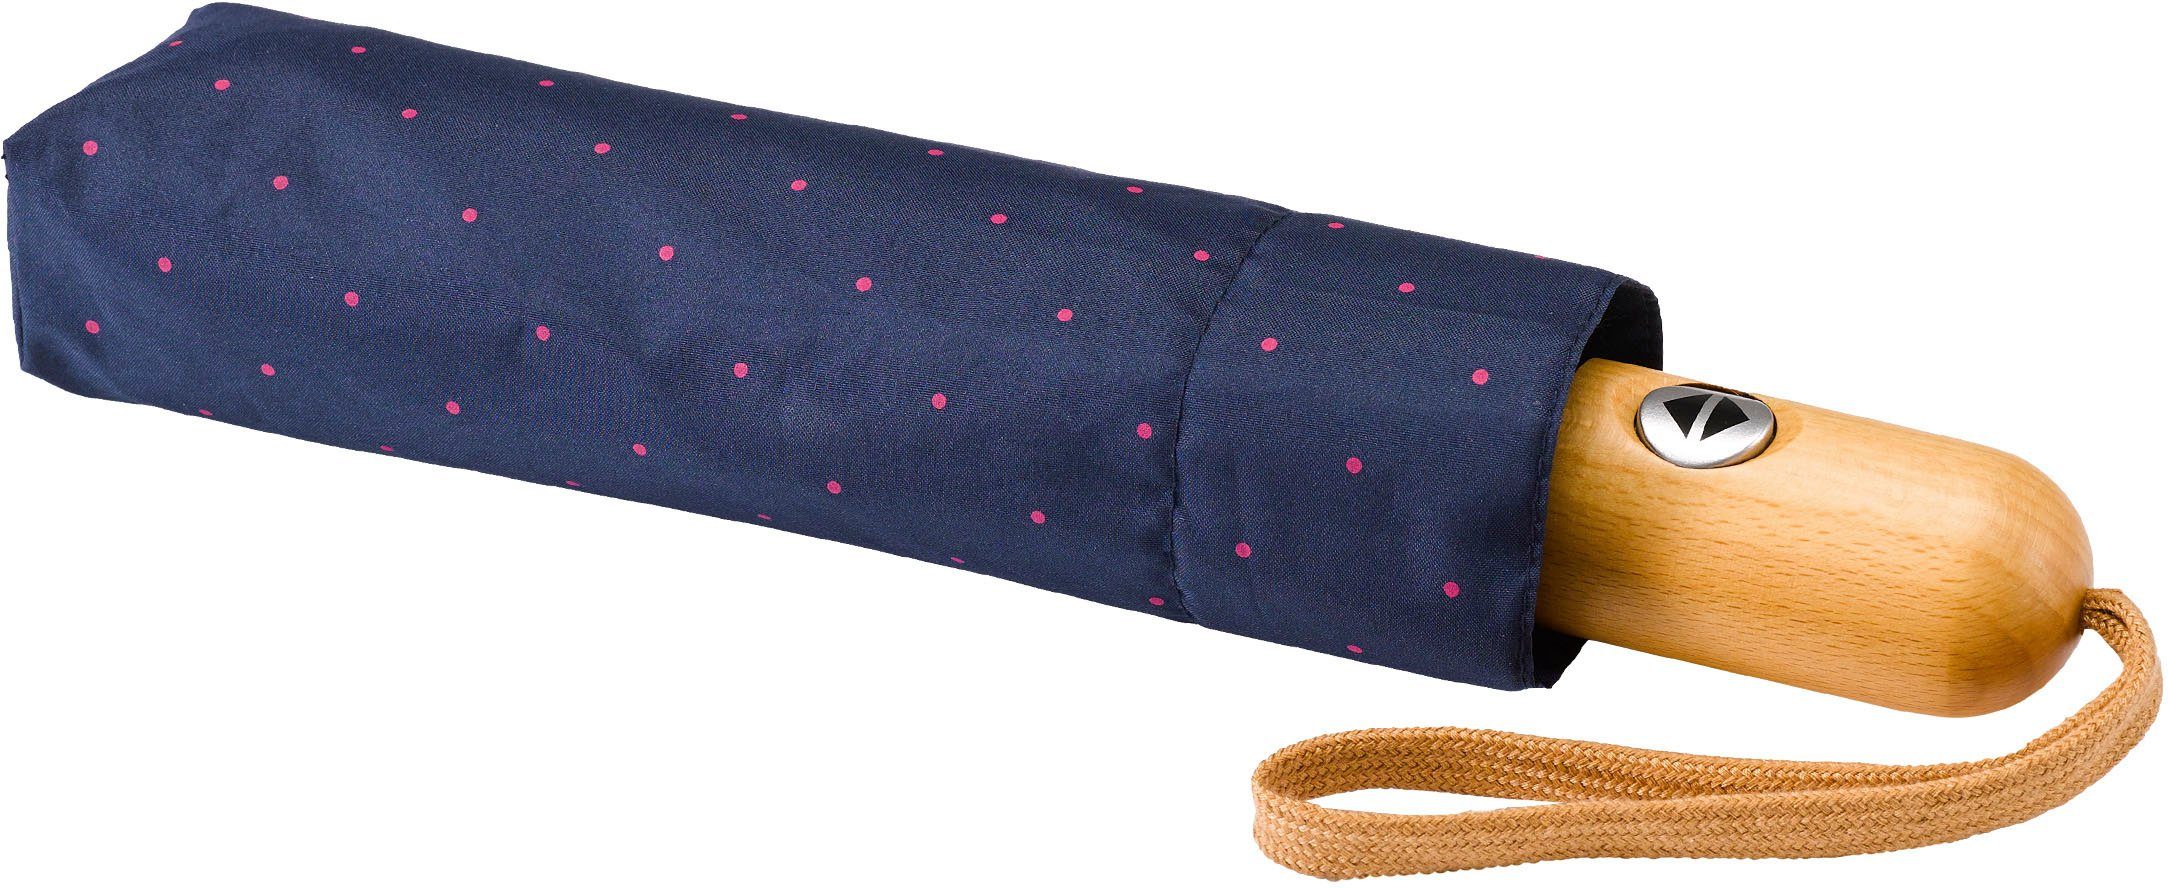 marine, Umwelt-Taschenschirm, pink EuroSCHIRM® Punkte Taschenregenschirm